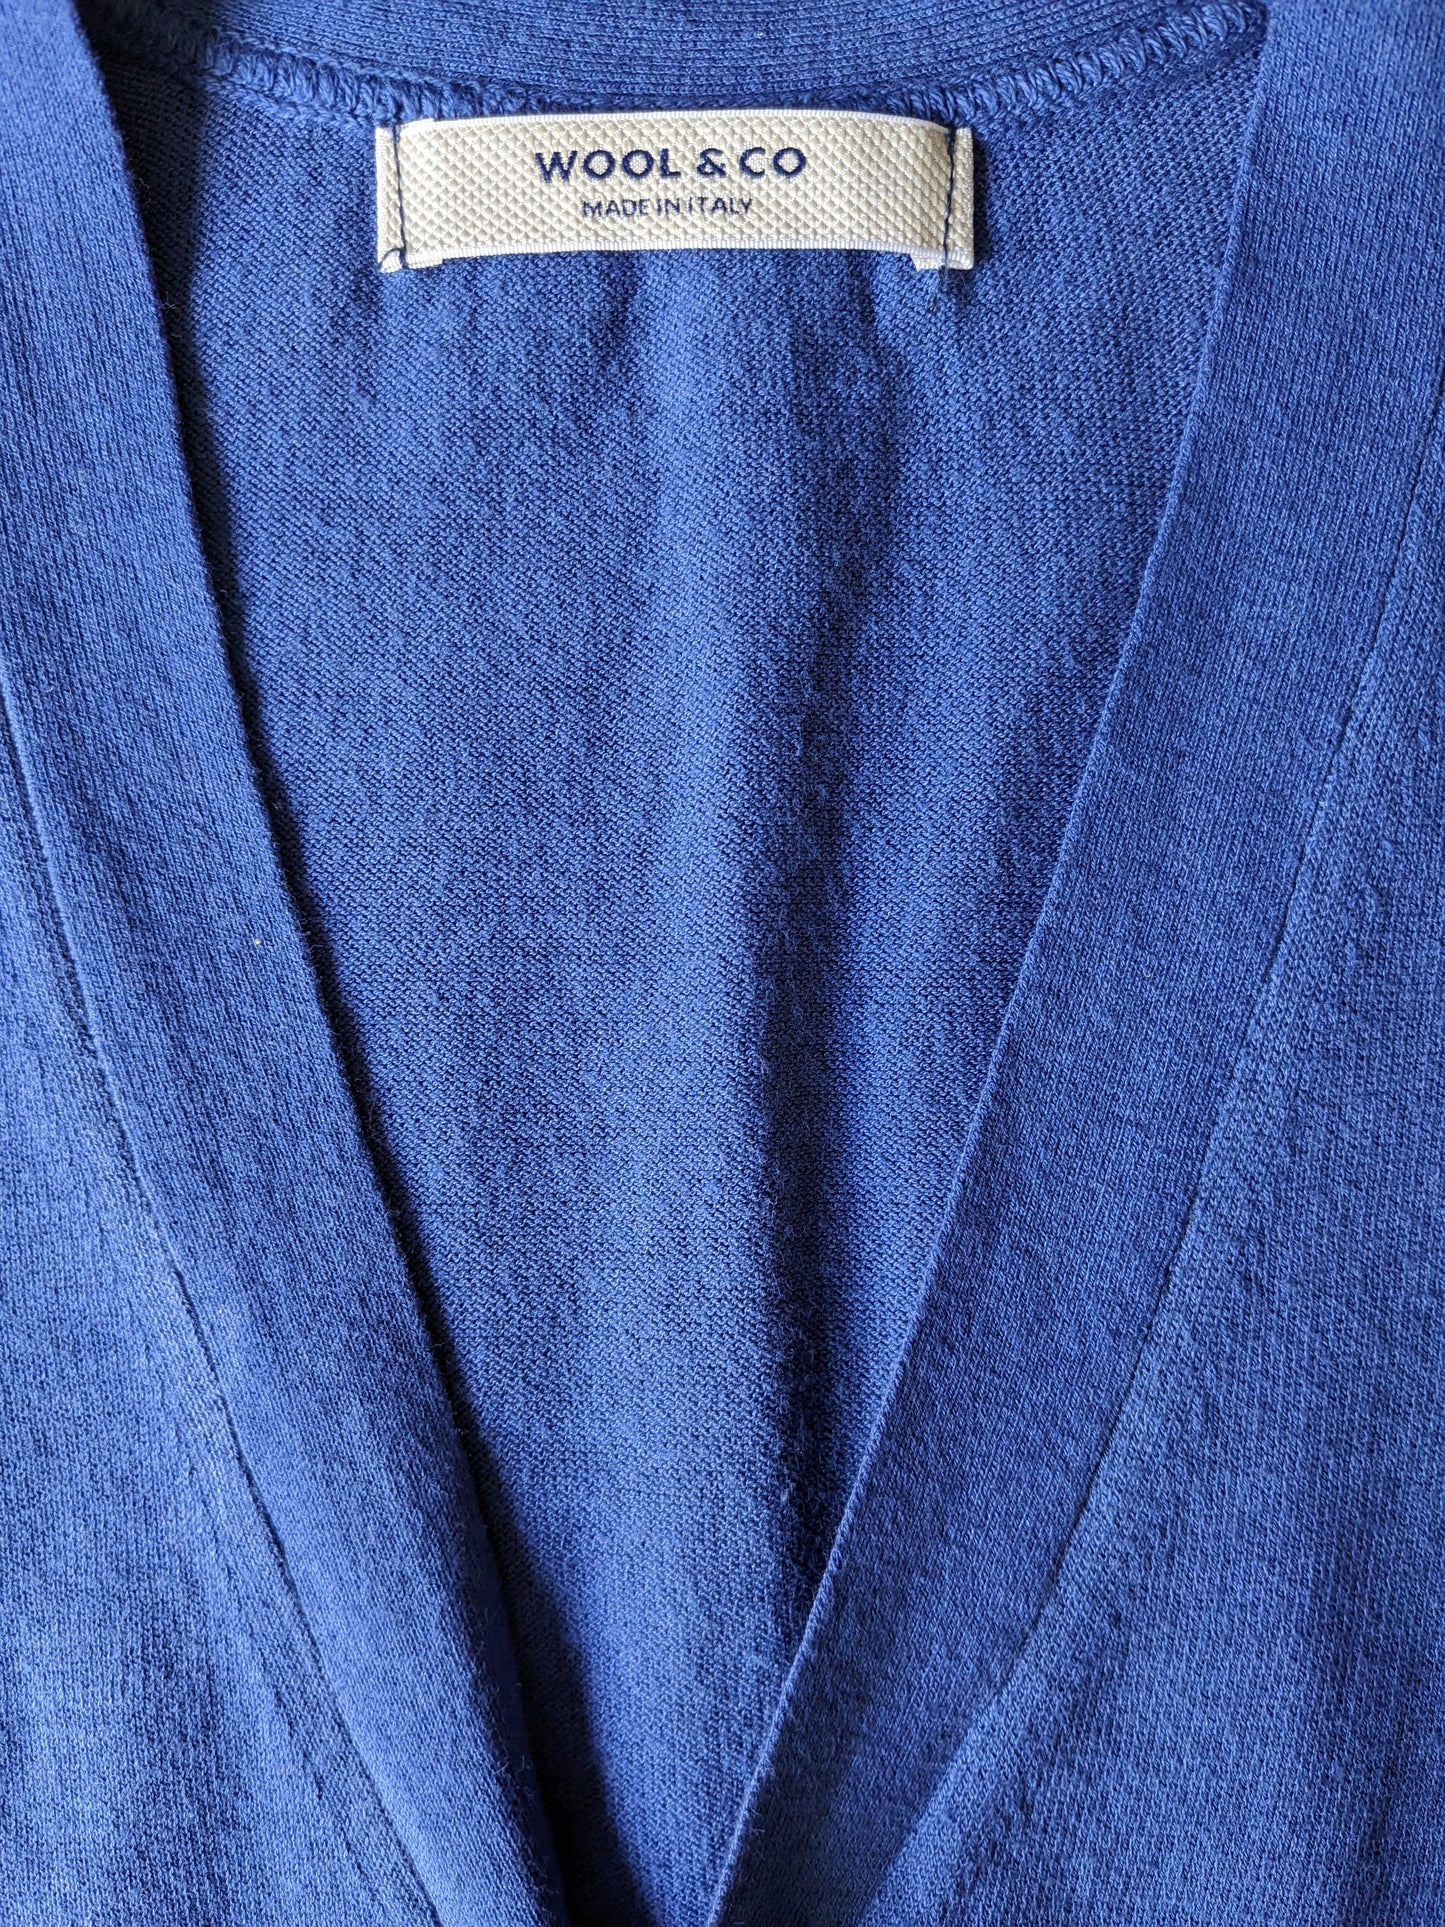 Wool & Co Katoenen gilet. Blauw gekleurd. Maat S.